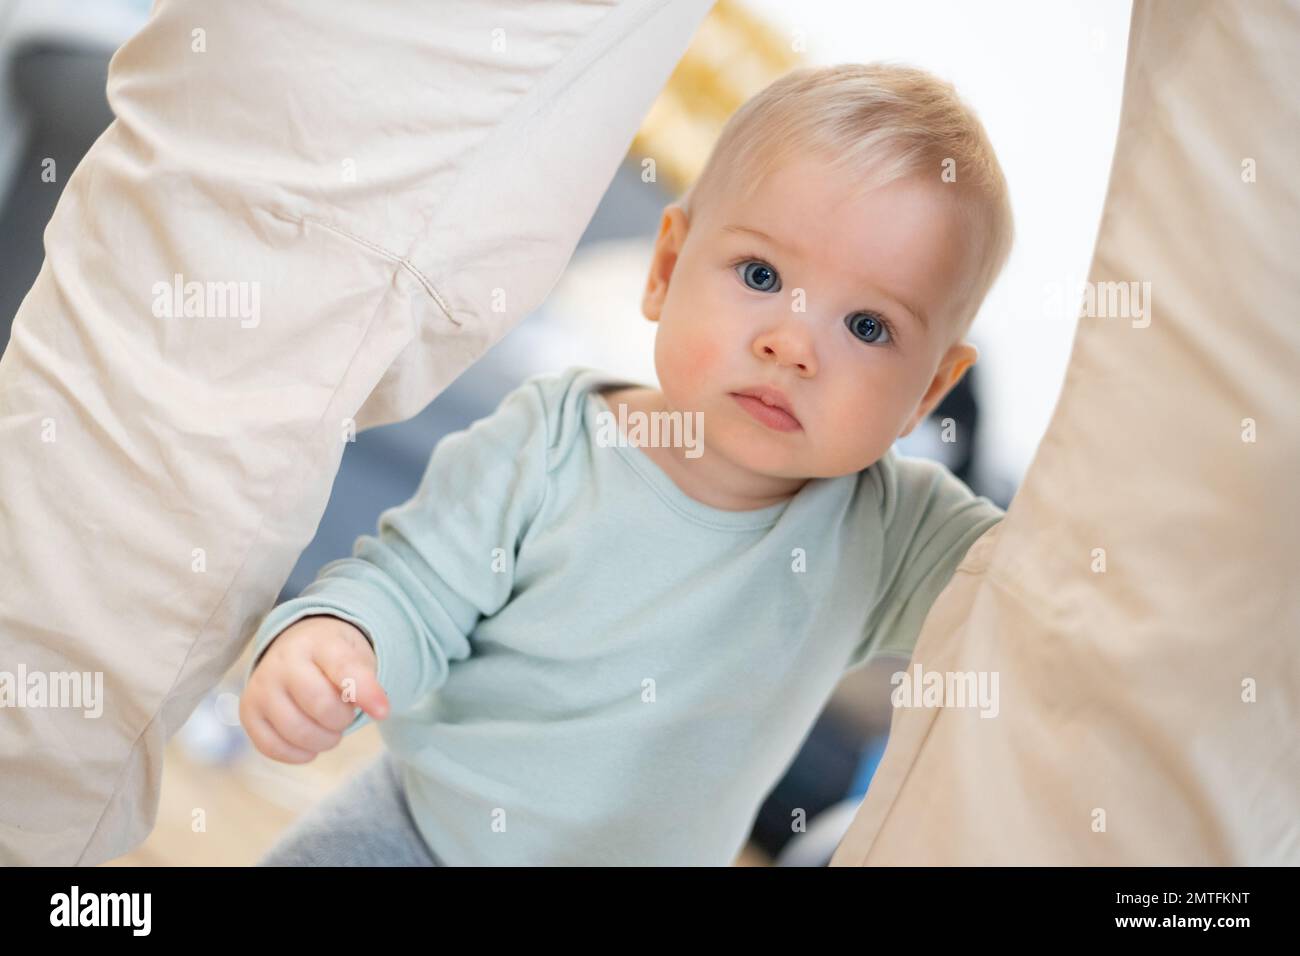 Porträt eines niedlichen neugierigen kleinen Jungen, das zu Hause die ersten Schritte unternimmt und an der Hose seines Vaters festhält. Süßer kleiner Junge, der Laufen lernt Stockfoto